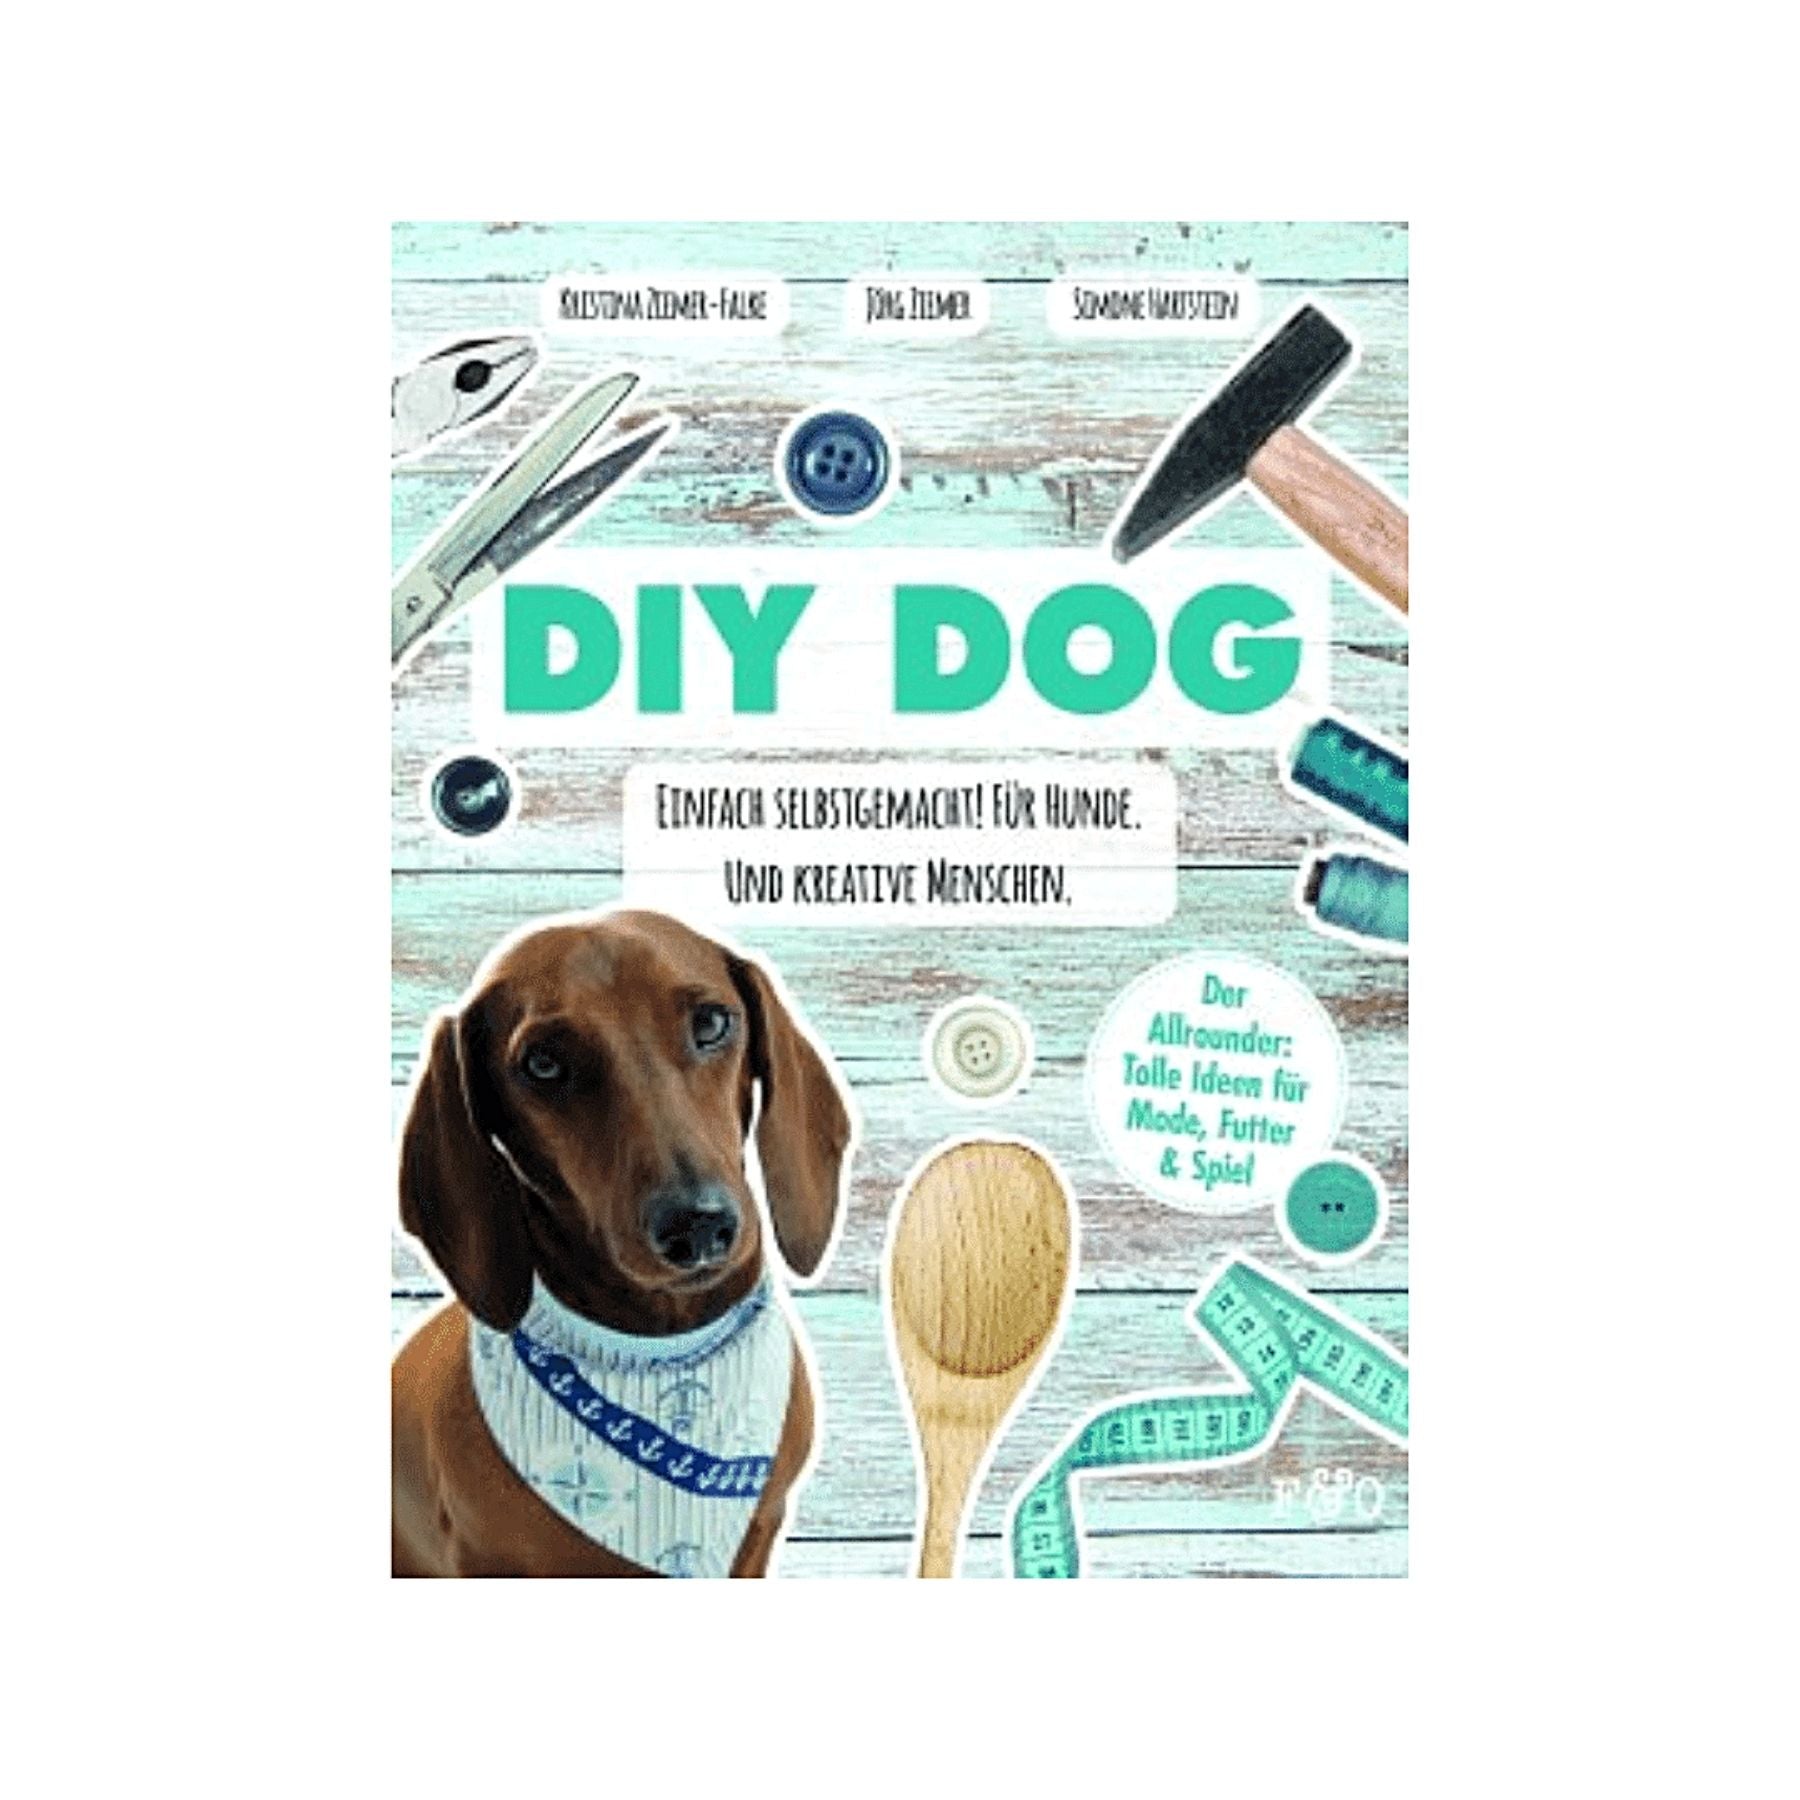 Dieses Buch heißt DIY Dog - Einfach selbstgemacht! Für Hunde und kreative Menschen. Mit diesem Allrounder-Buch zum Thema DIY für Hunde kann der Bastelspaß beginnen! Mit tollen Projekten zum Selbermachen, für Hunde und deren BesitzerInnen mit vielen verschiedenen Bedürfnissen.